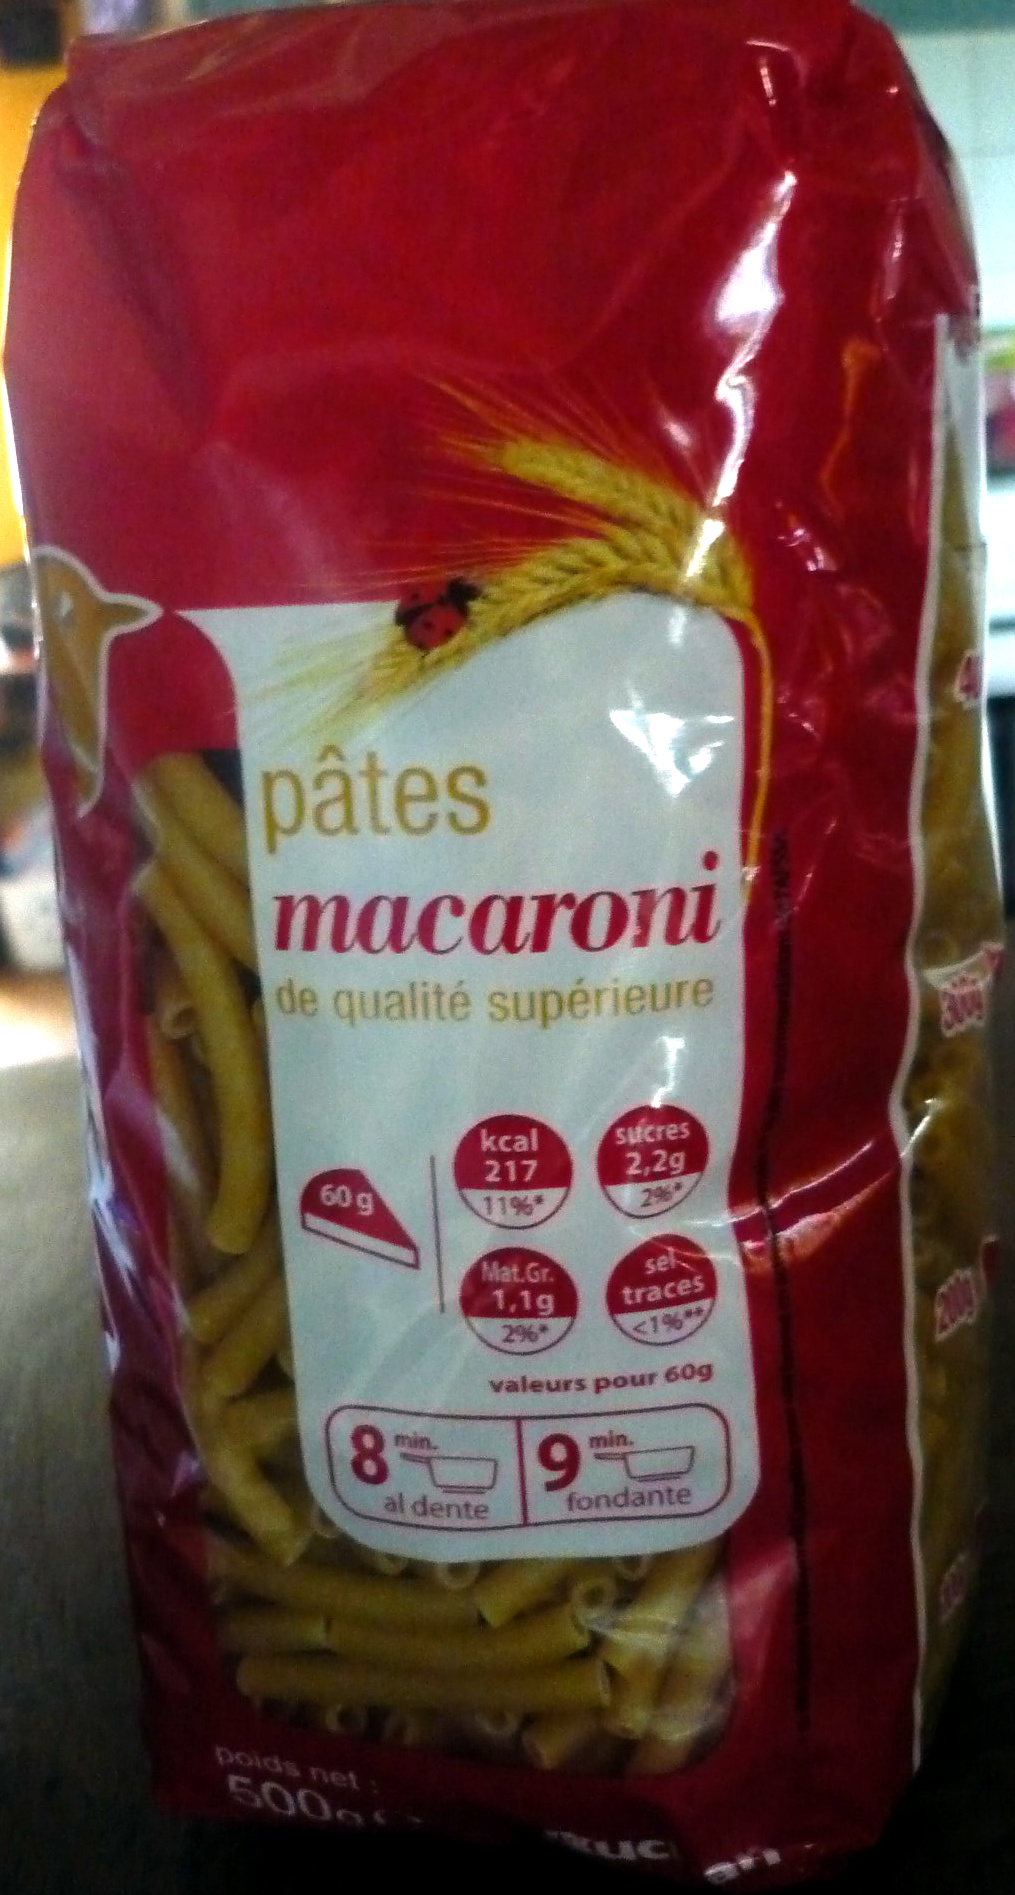 Pâtes macaroni de qualité supérieure - Product - fr